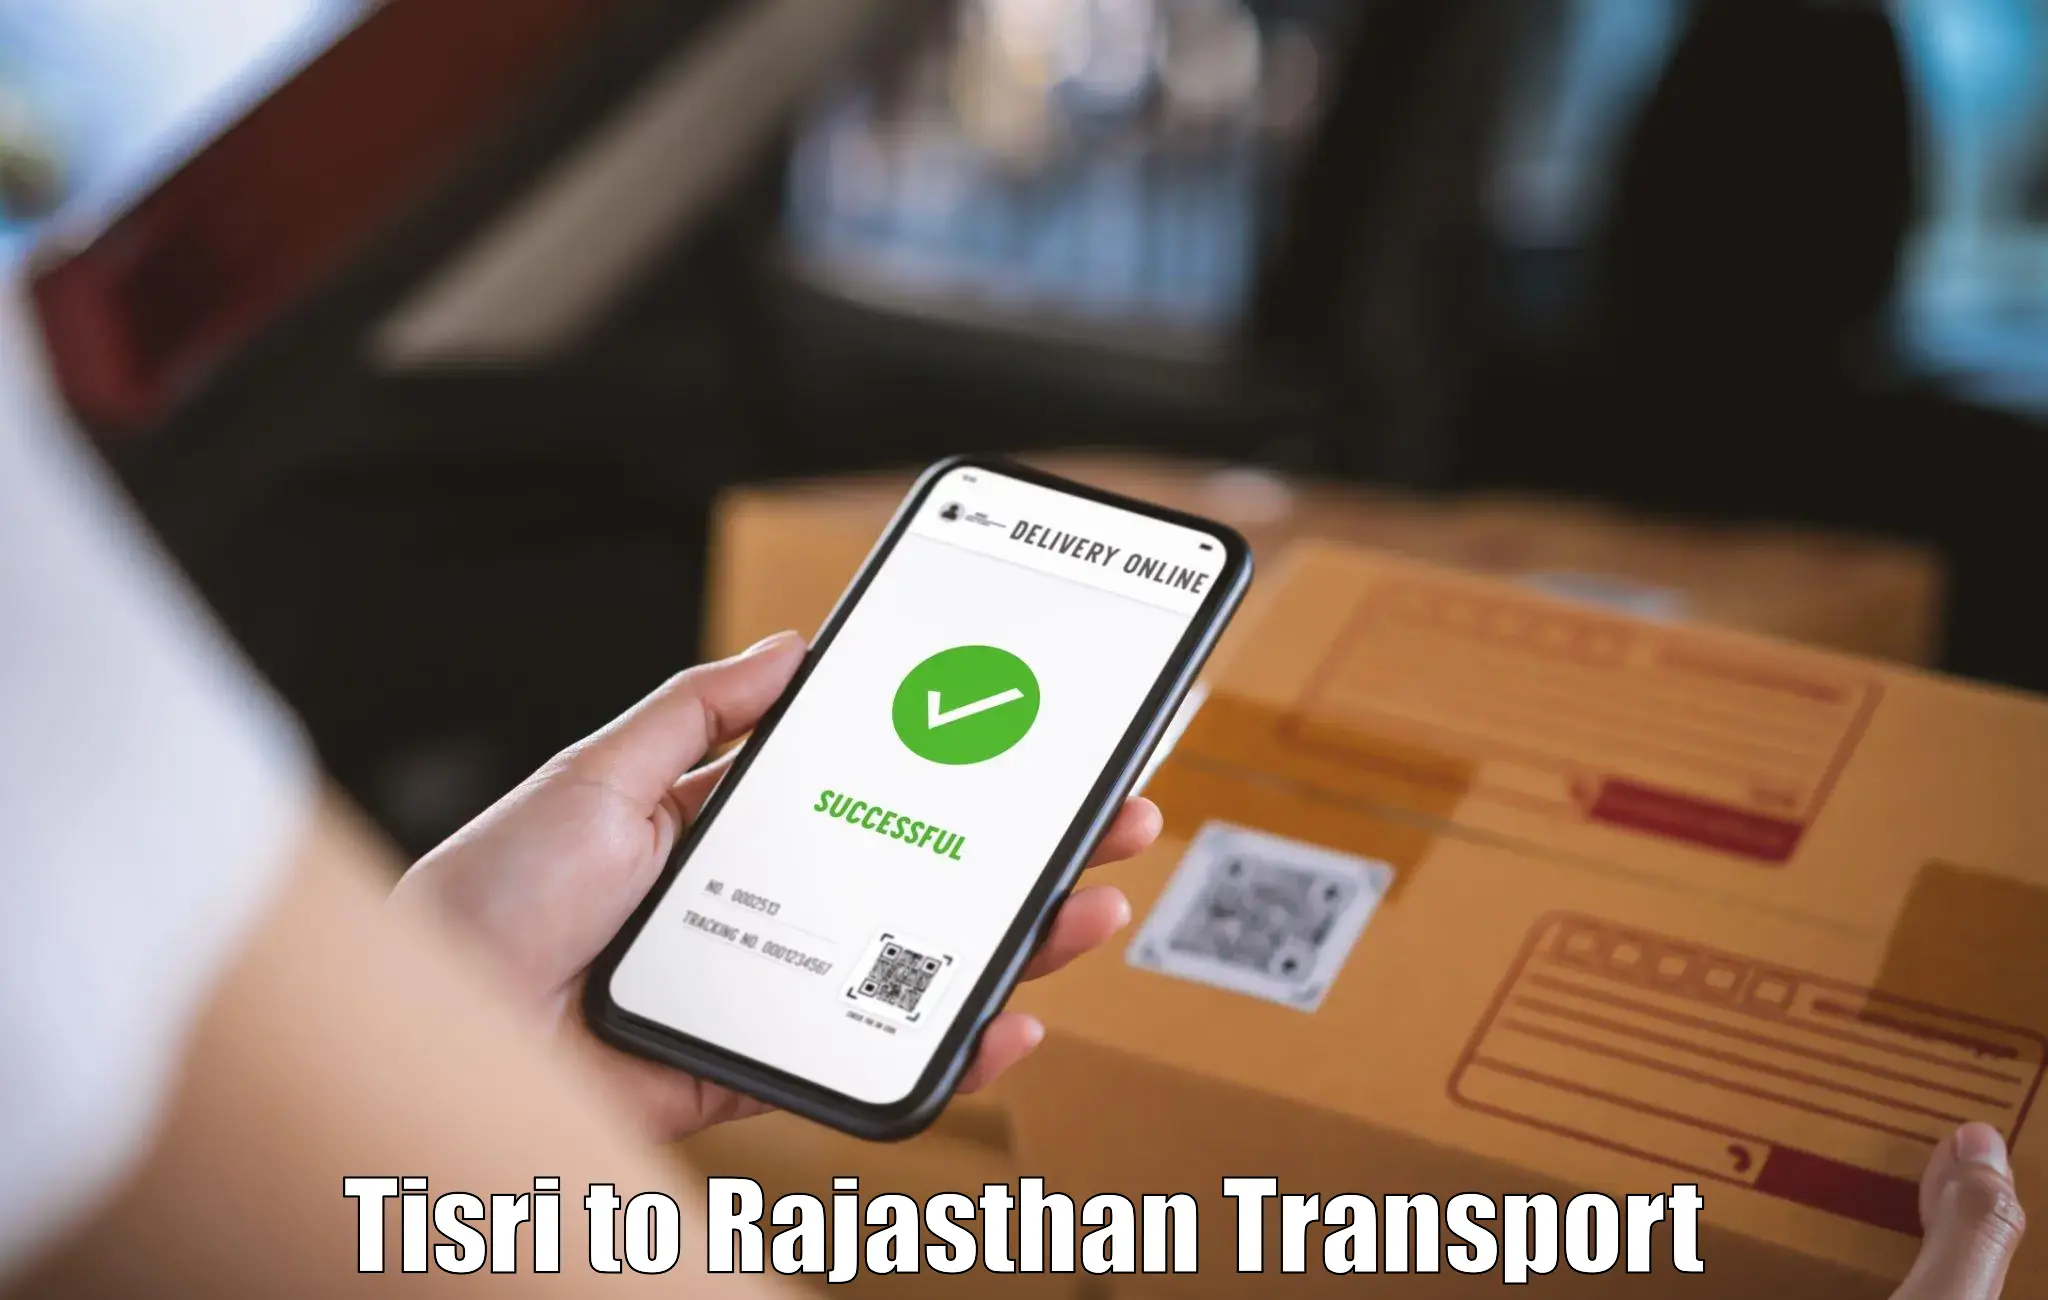 Transport in sharing Tisri to Sri Ganganagar